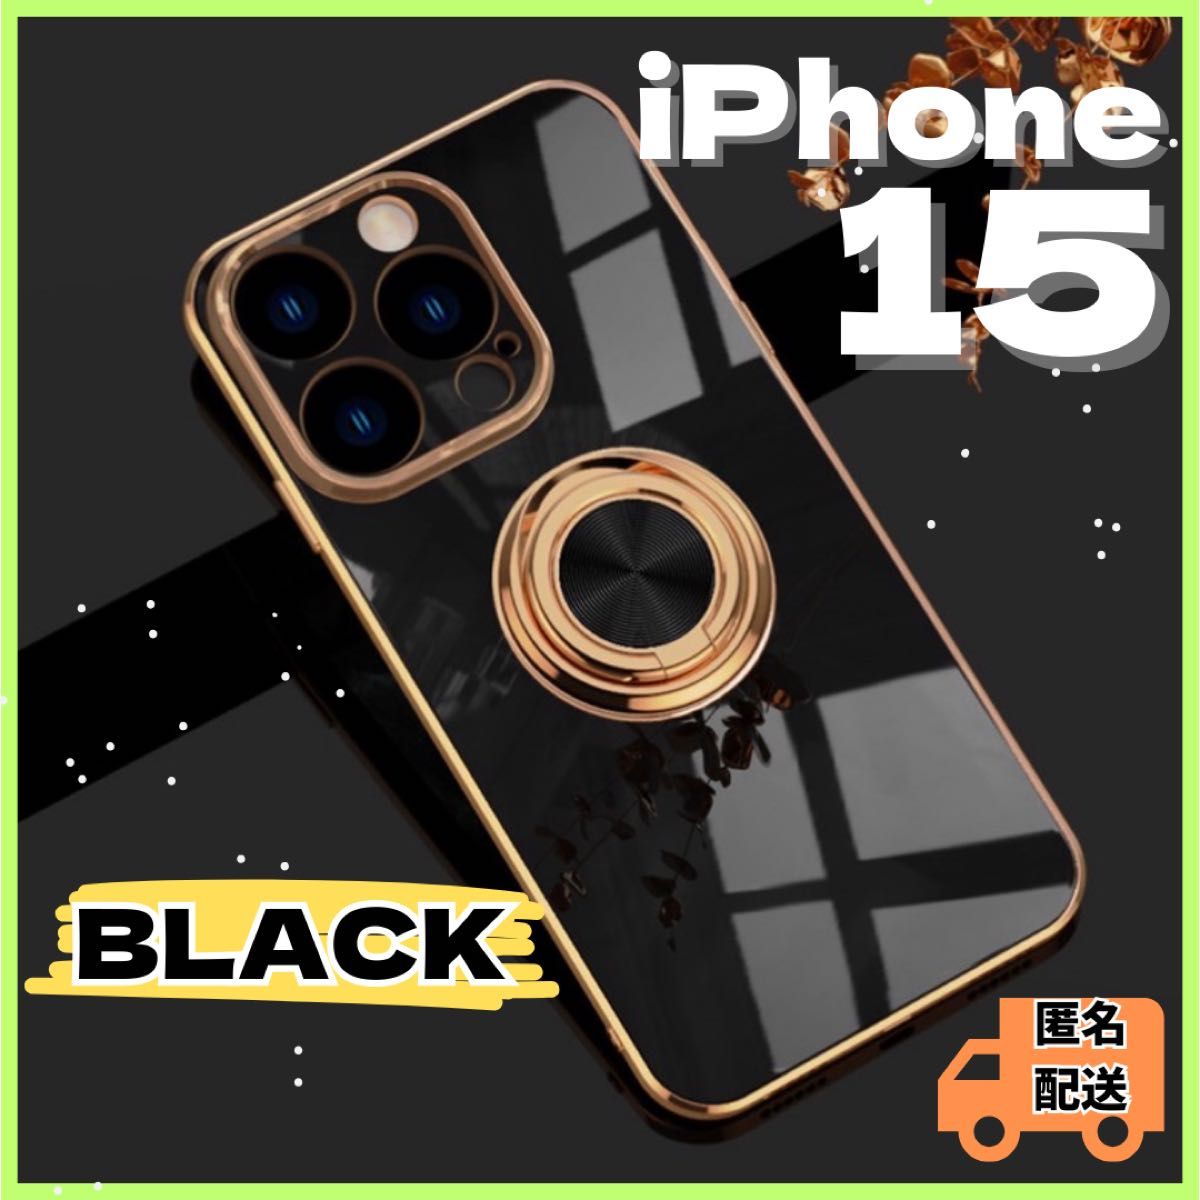 リング付き iPhone ケース iPhone15 ブラック 高級感 韓国 黒 ゴールド ソフトケース 落下防止 TPU